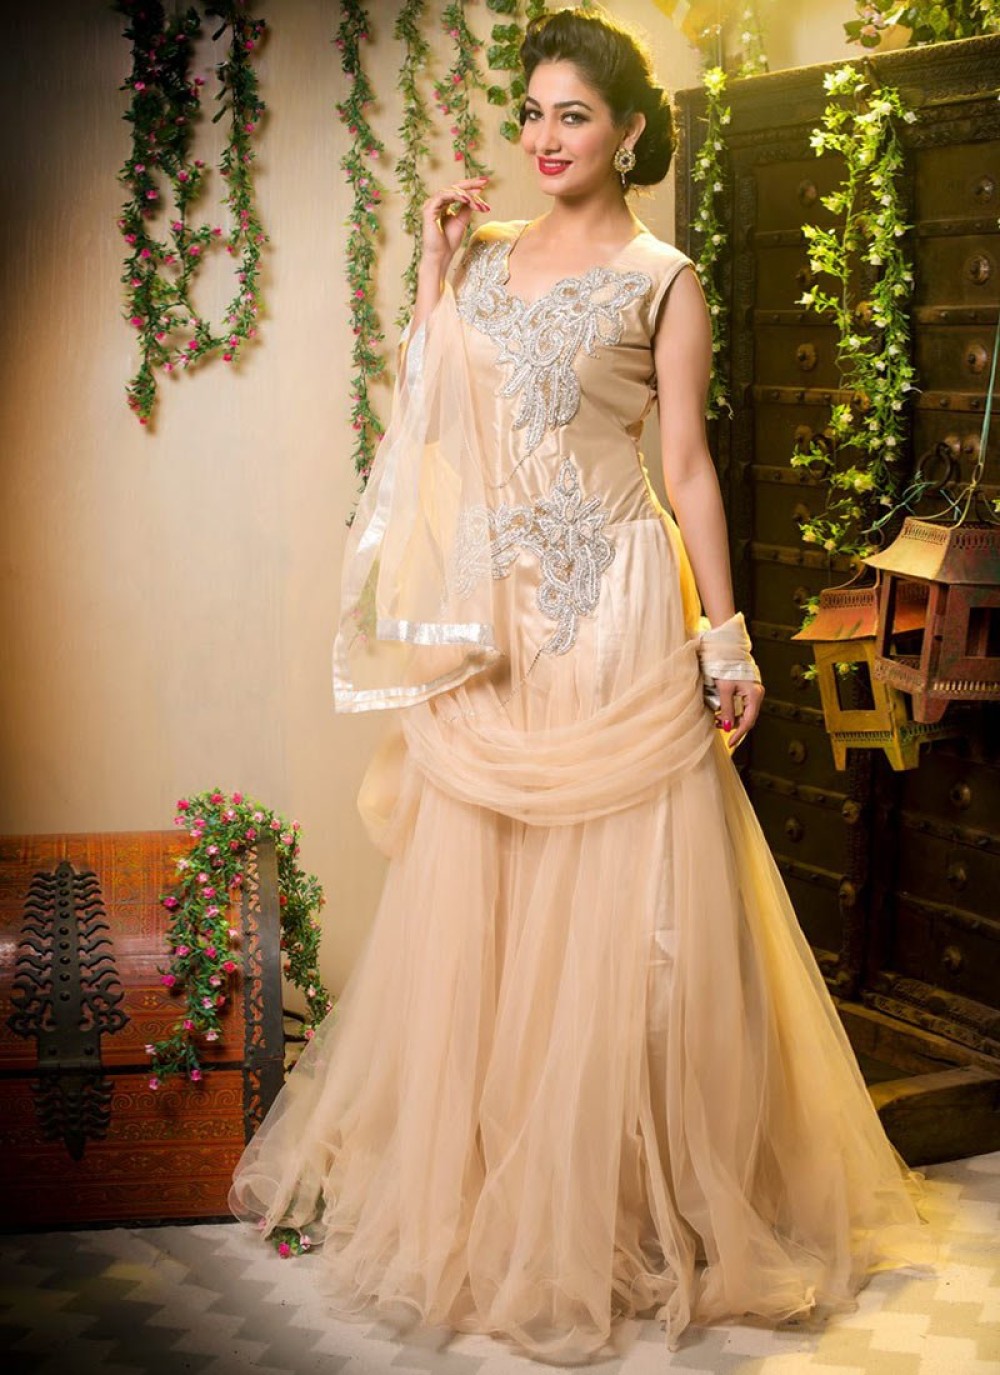 Off-White Chikankari Lehenga and Choli Dress for Bride – BridalLehenga